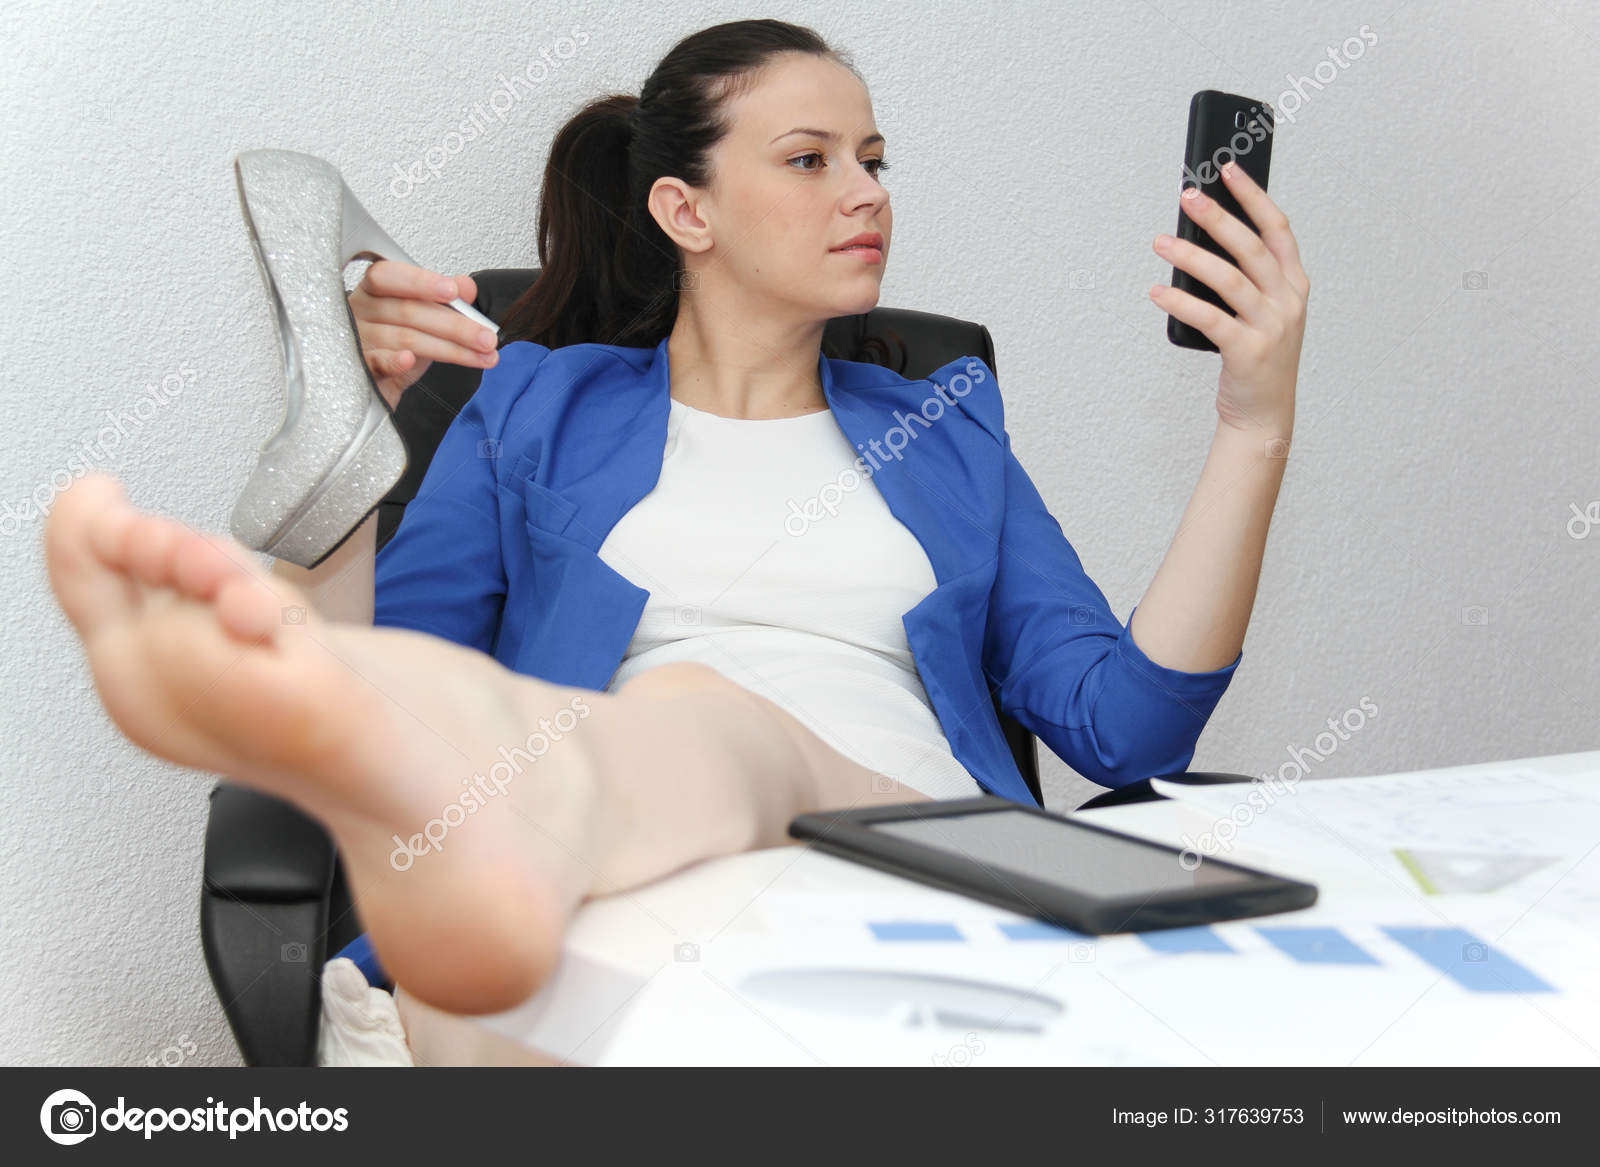 Сидя в офисном кресле жена сняла трусы фото